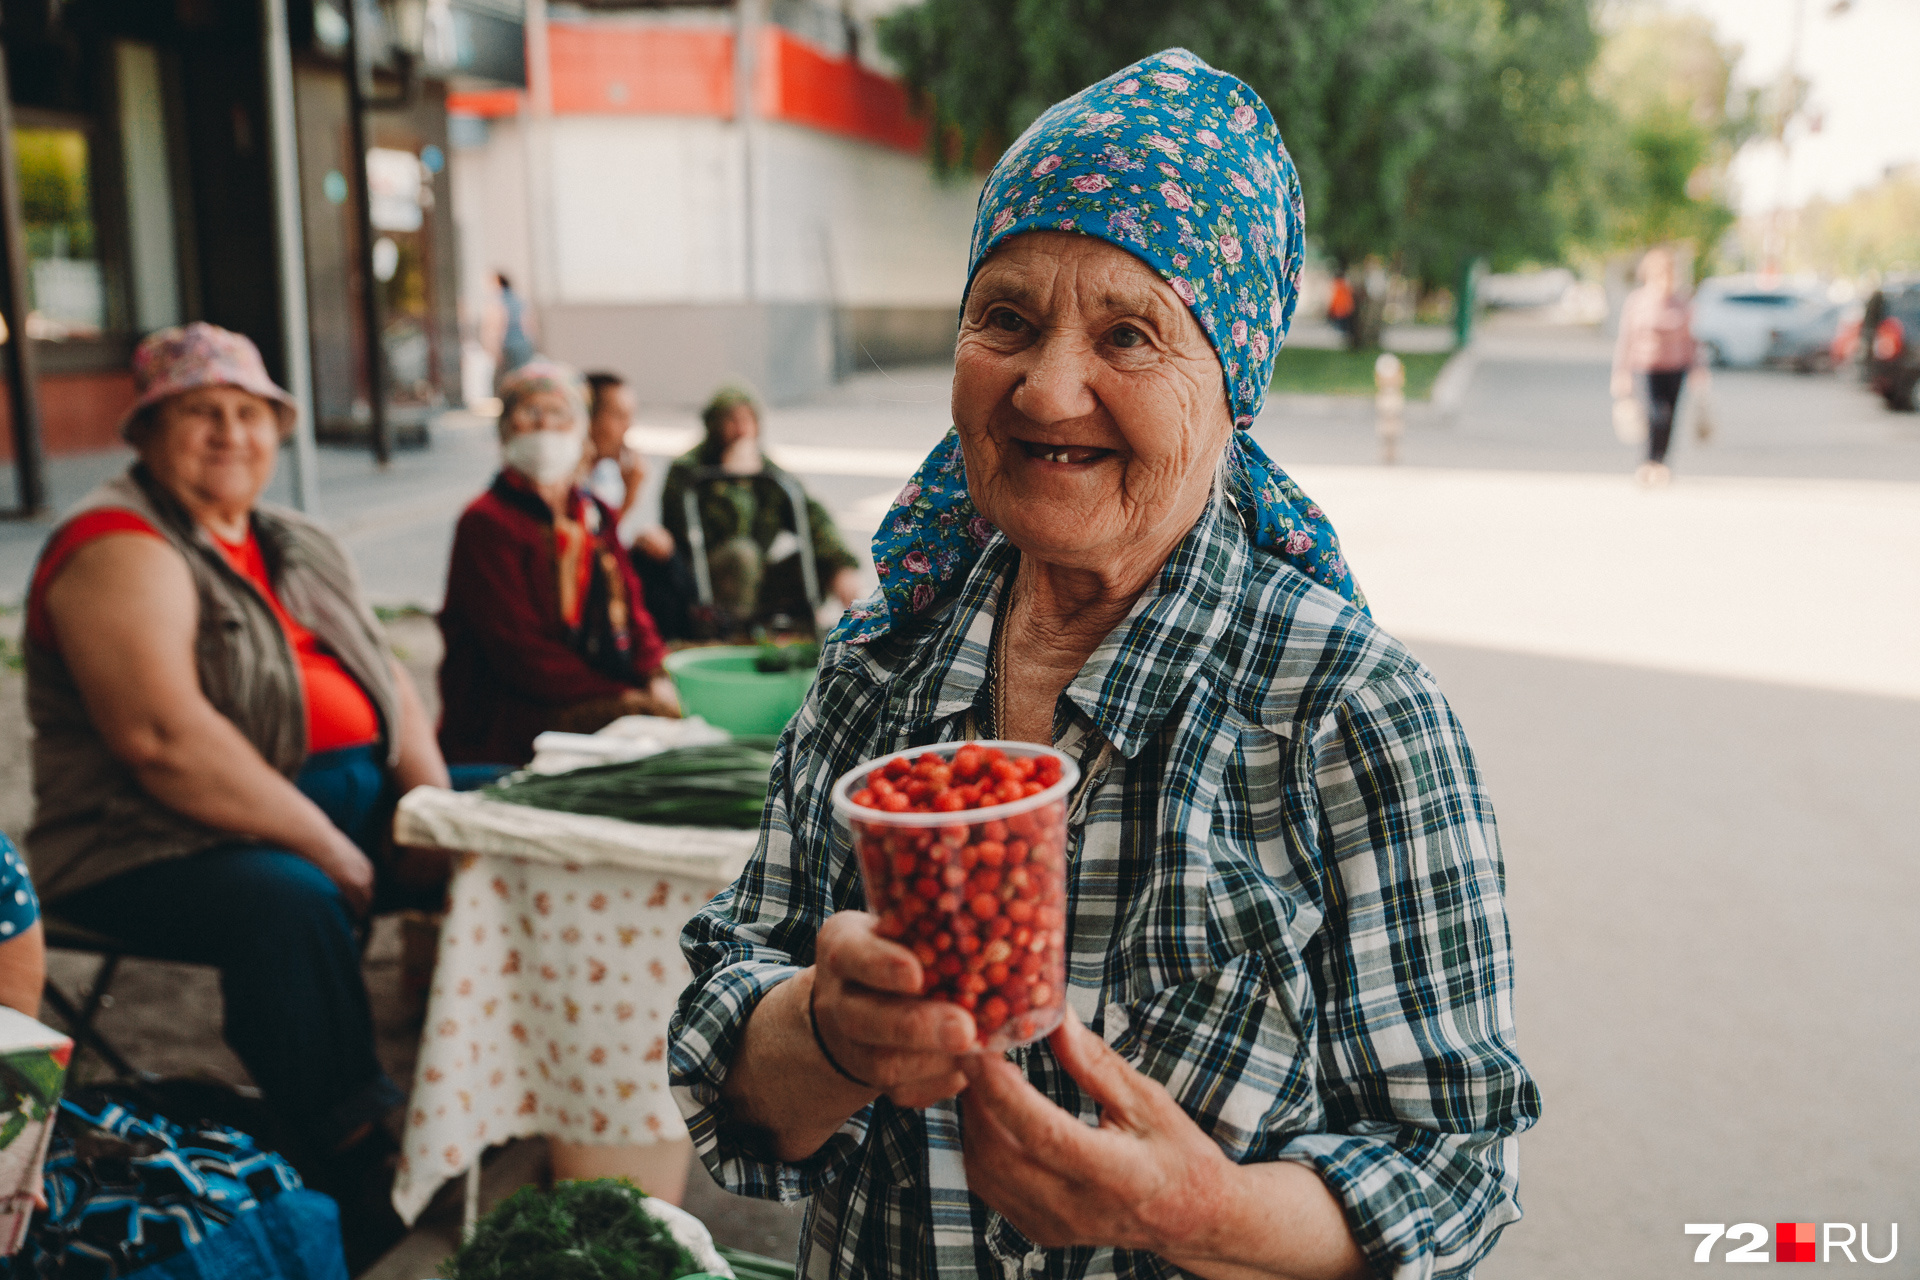 81-летняя Капитолина Павловна собирает землянику в лесах Комарово. Женщина говорит, что длительная жара и солнцепек плохо влияют на ягоды и грибы. В такую погоду большая вероятность, что они просто высохнут, а вот дожди и влага обещают, что лесной урожай будет богатым 